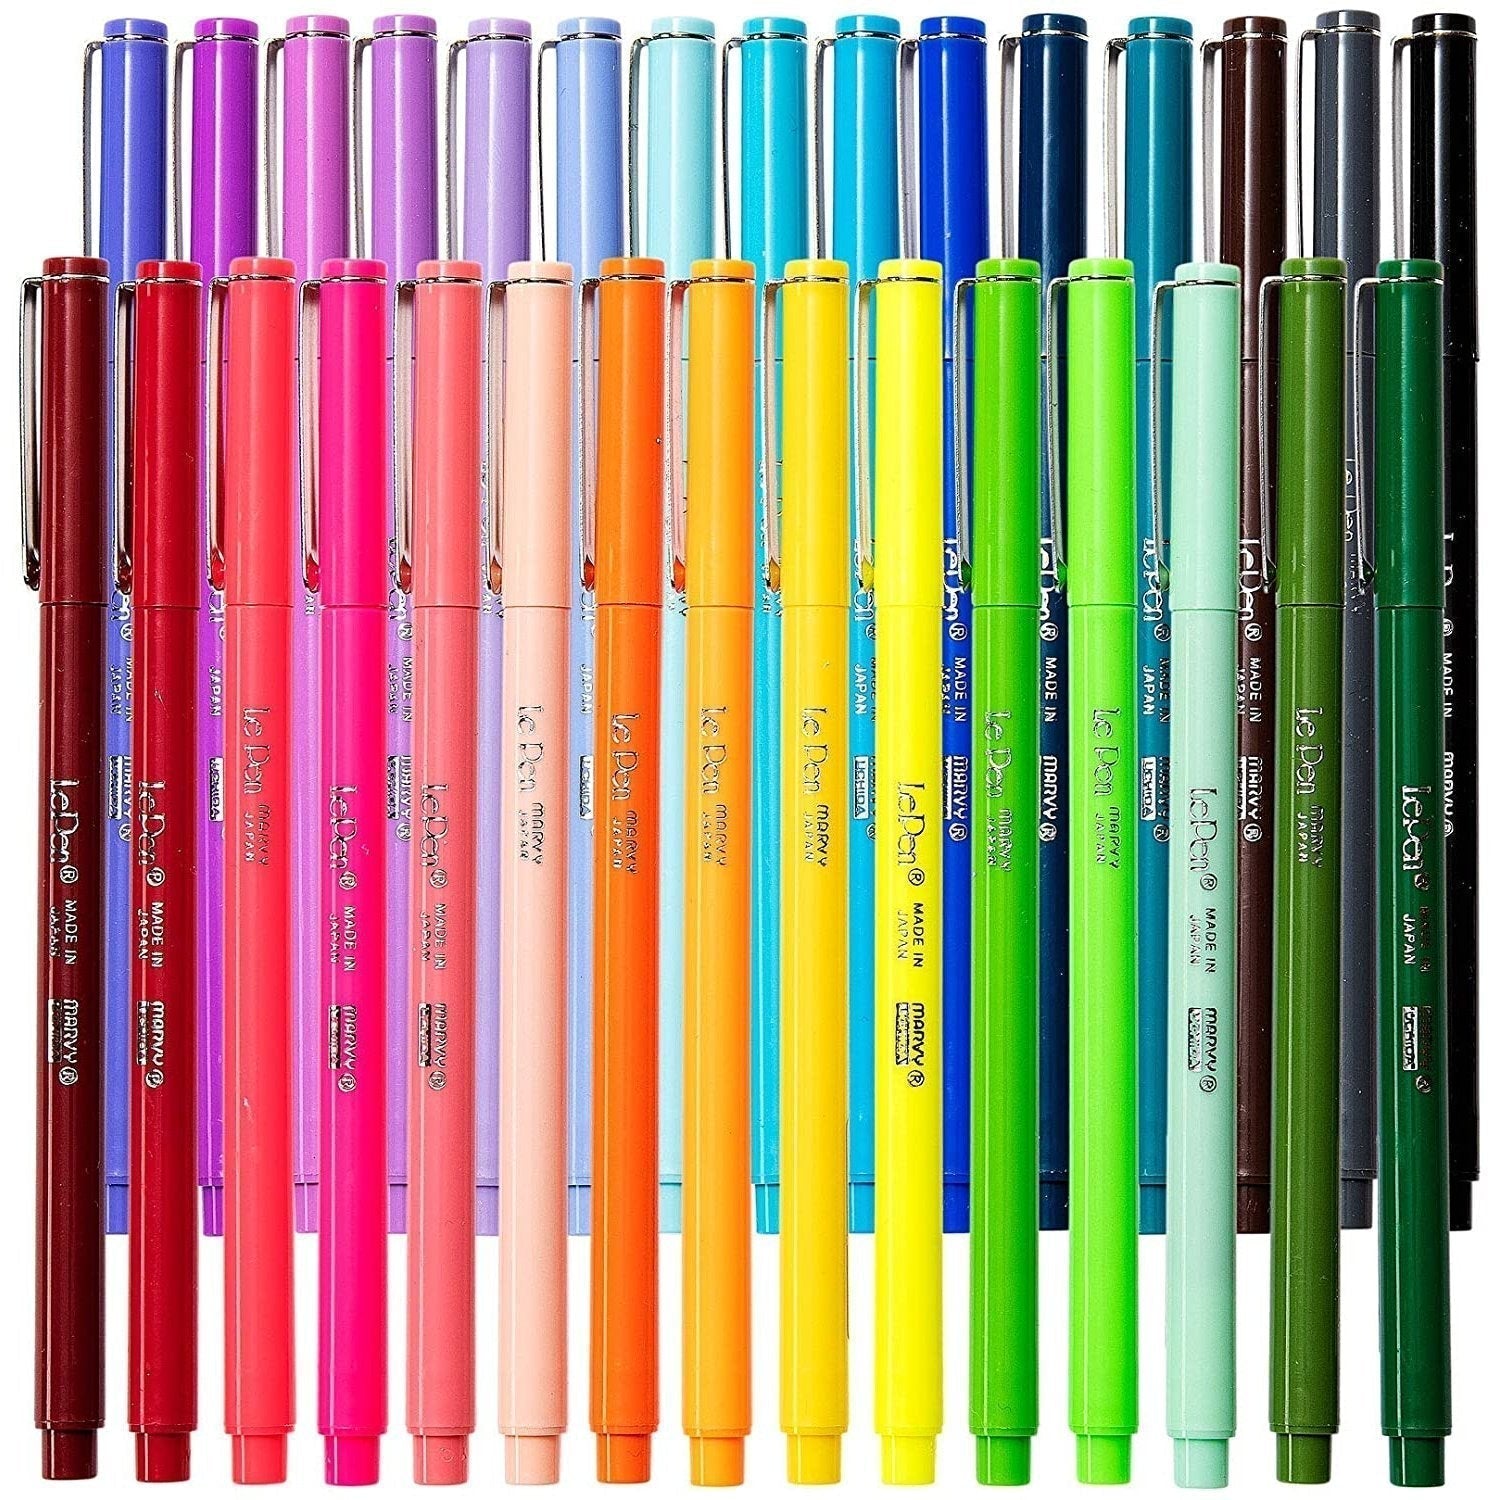 http://www.littlegiantkidz.com/cdn/shop/files/Le-Pens-Multicolor-Set-0_3mm-Fine-Point-Pens-Smudge-Proof-Ink-30-Count-Basic-Neon-and-Pastel-Colors-Montrose-Colors-Inc_650fdef4-cd64-4fed-9a88-3ba469a14009.jpg?v=1690235196&width=2048